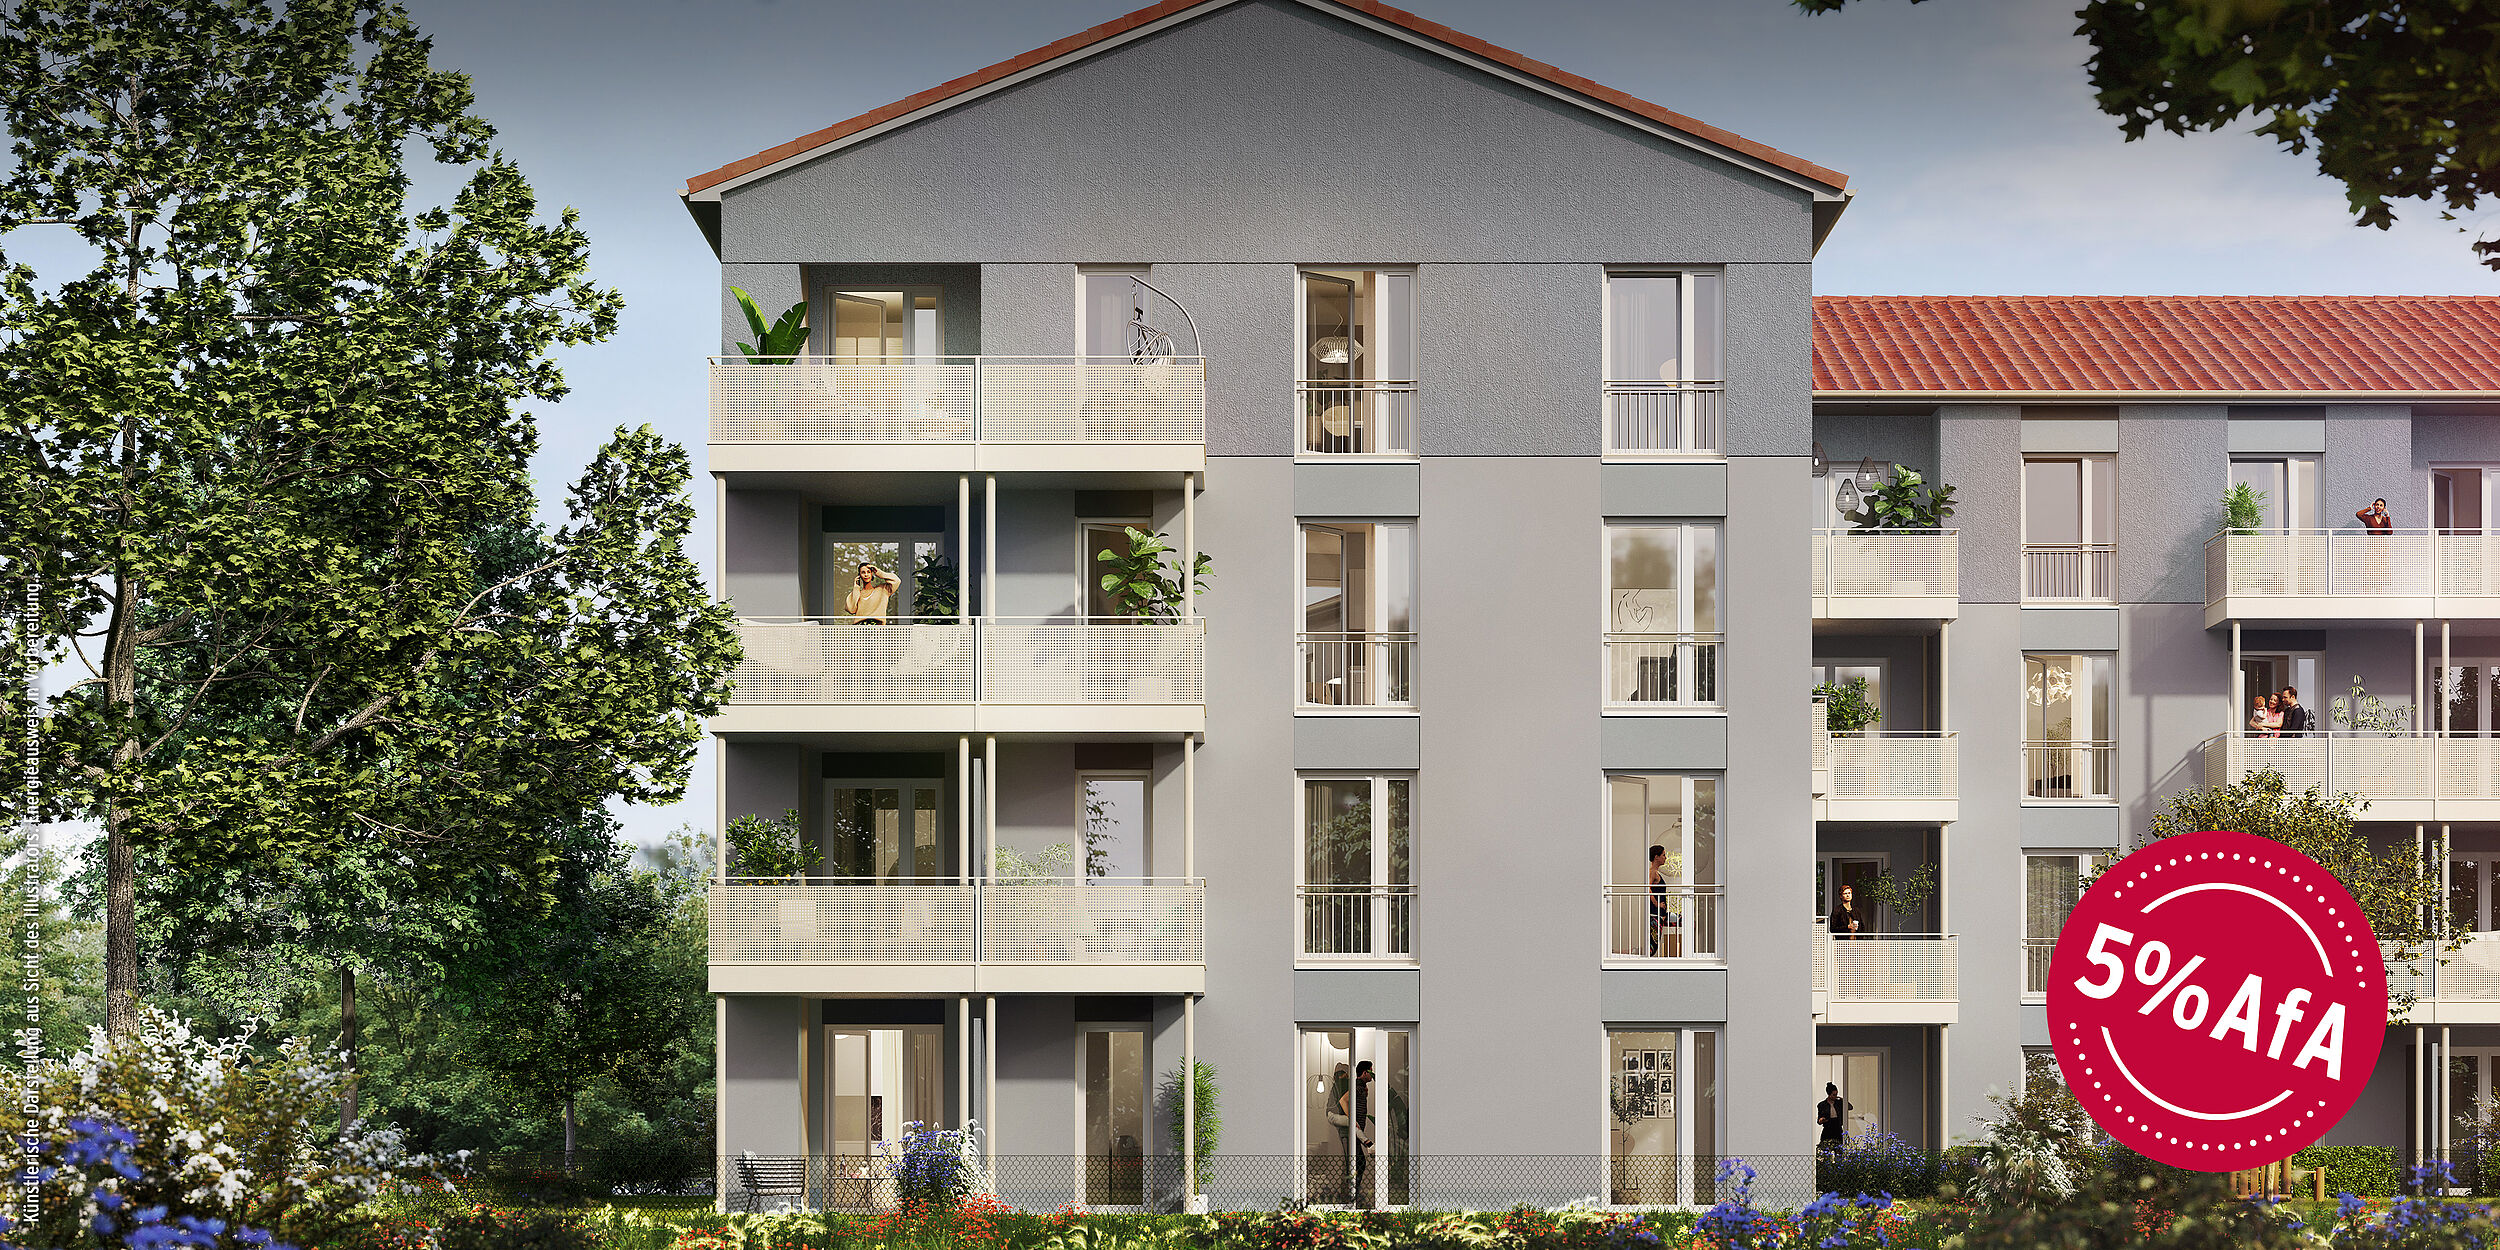 HI-Wohnbau LIEBERMANNS' Illustration Fassade bei Tag NEUER STEUERVORTEIL: 5% DEGRESSIVE AFA FÜR NEUBAUTEN